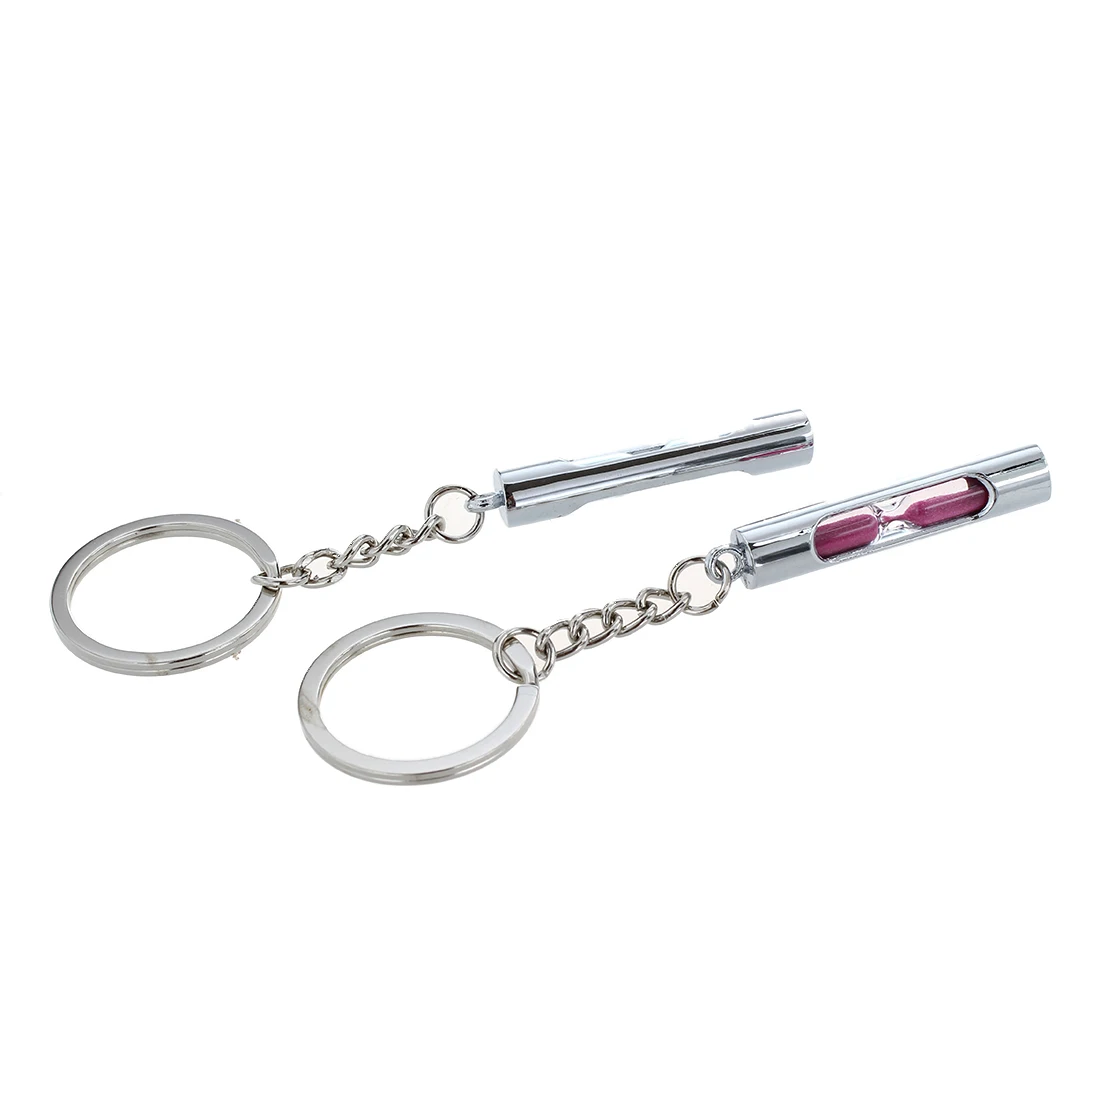 2 Классические Брелоки для ключей в виде песочных часов брелоки с песочным таймером для идеального подарка на День святого Валентина Розовый Синий